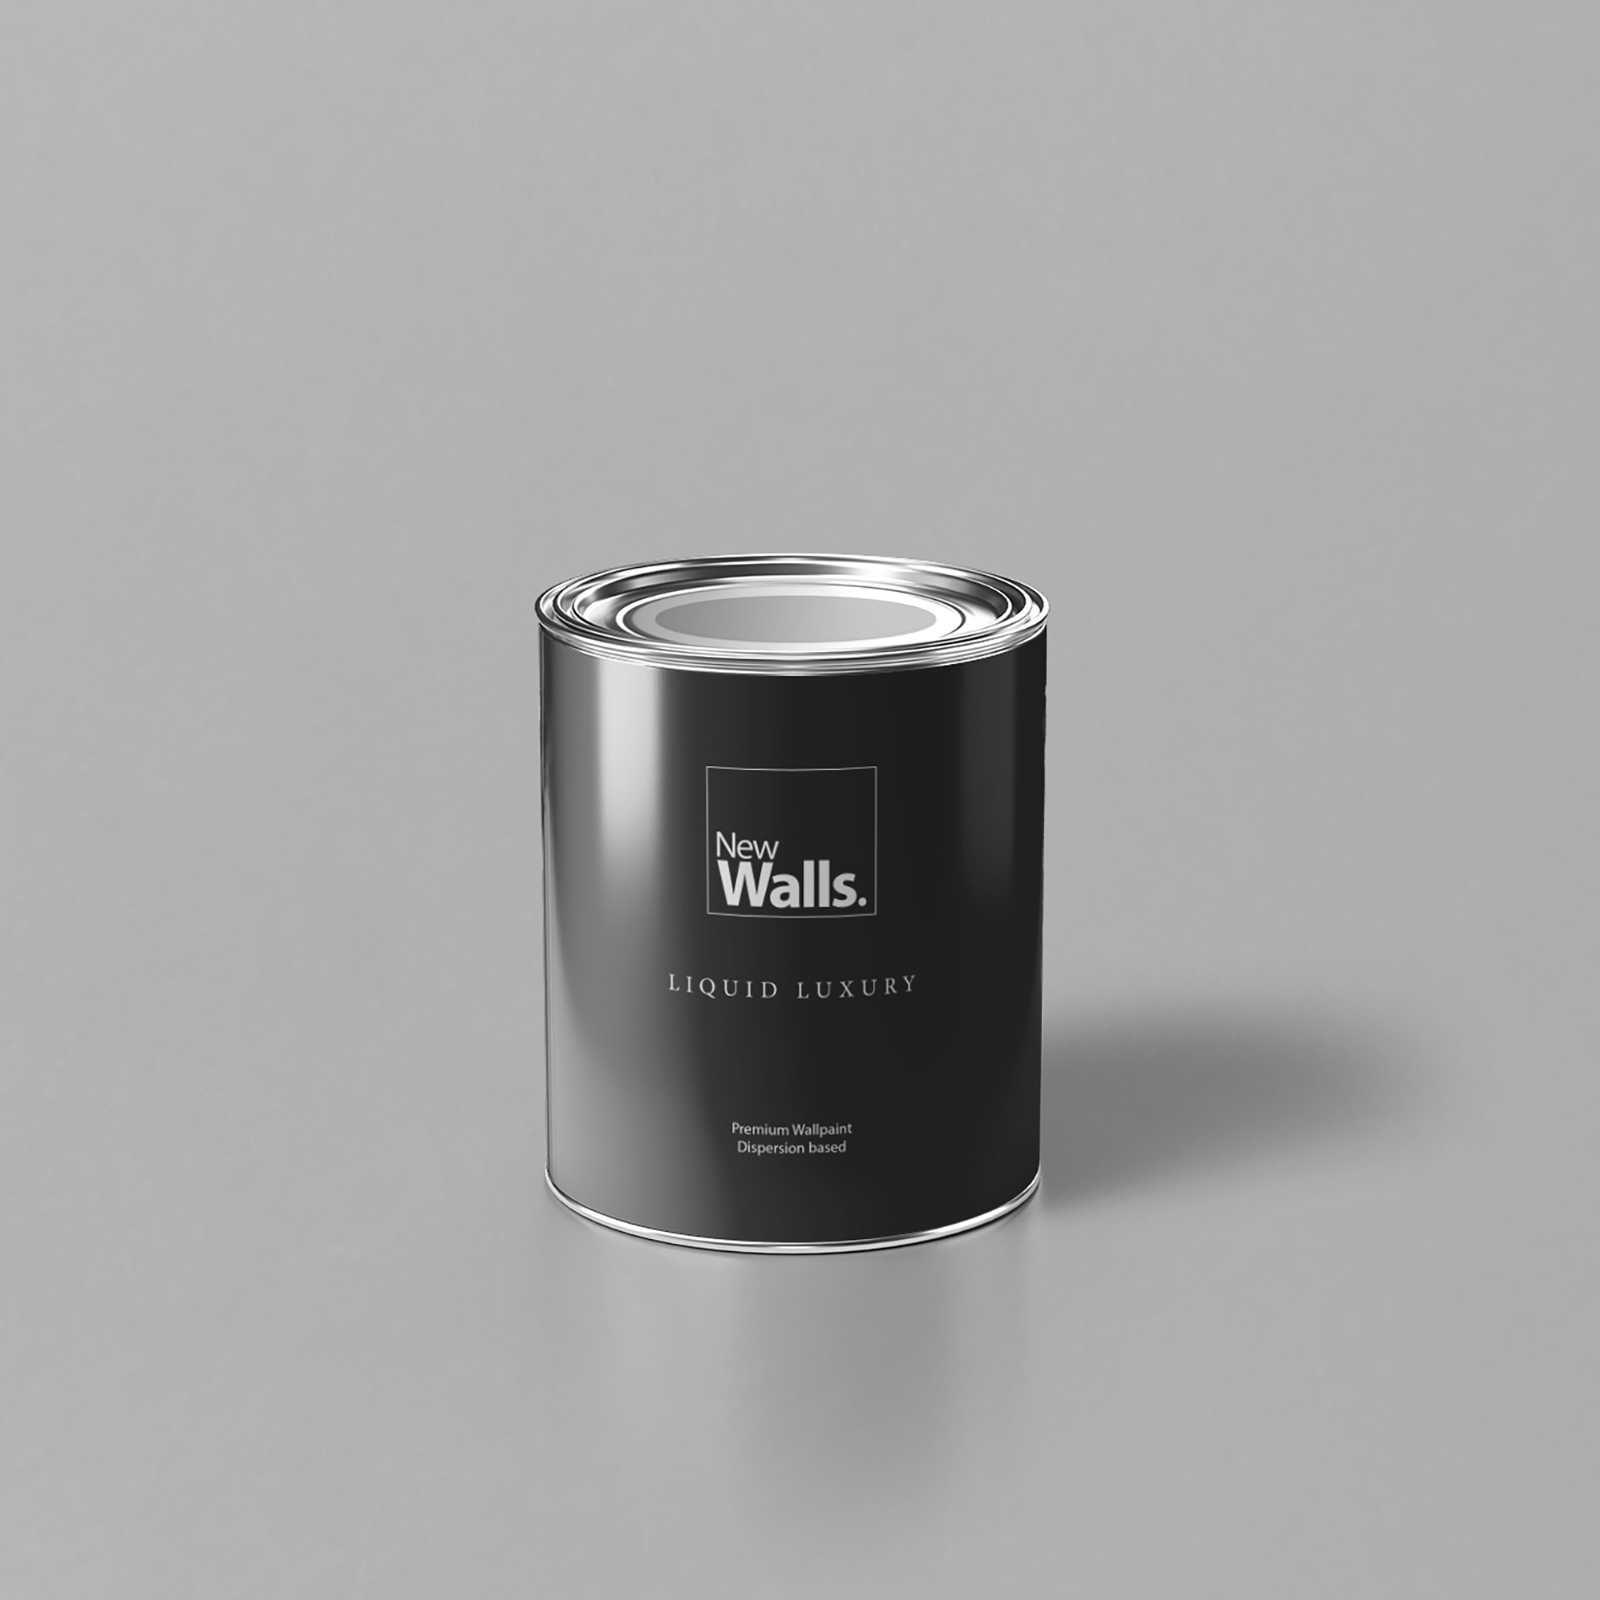         Premium Wandfarbe wohnliches Silber »Creamy Grey« NW109 – 1 Liter
    